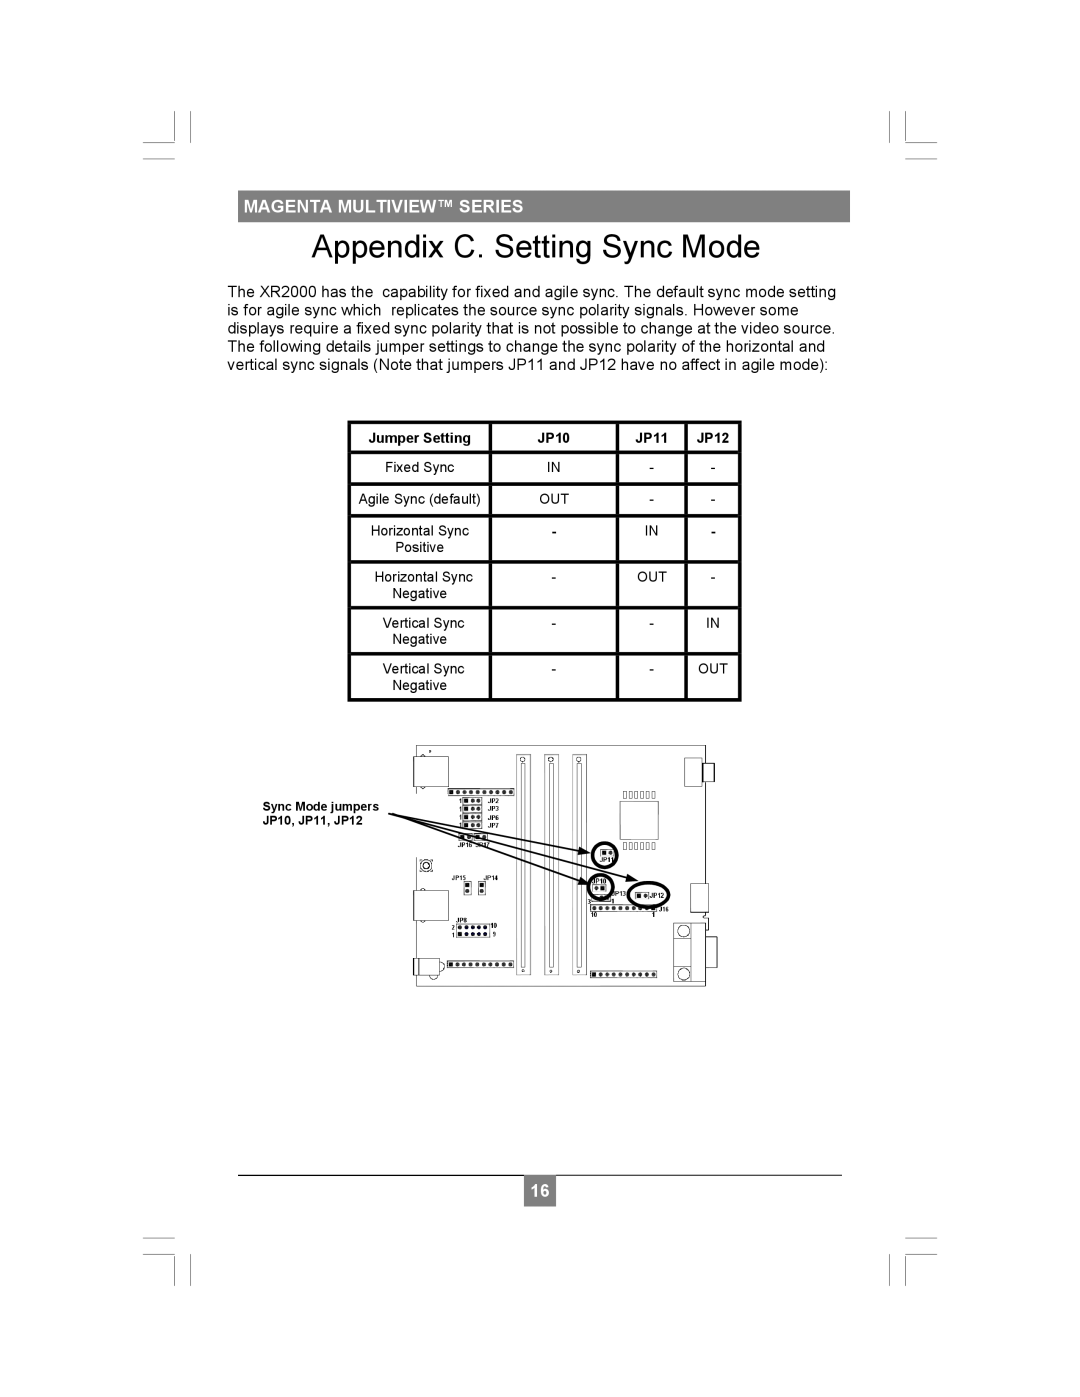 Magenta XR2000 setup guide Appendix C. Setting Sync Mode, Magenta Multiview Series, Jumper Setting, JP10, JP11, JP12 